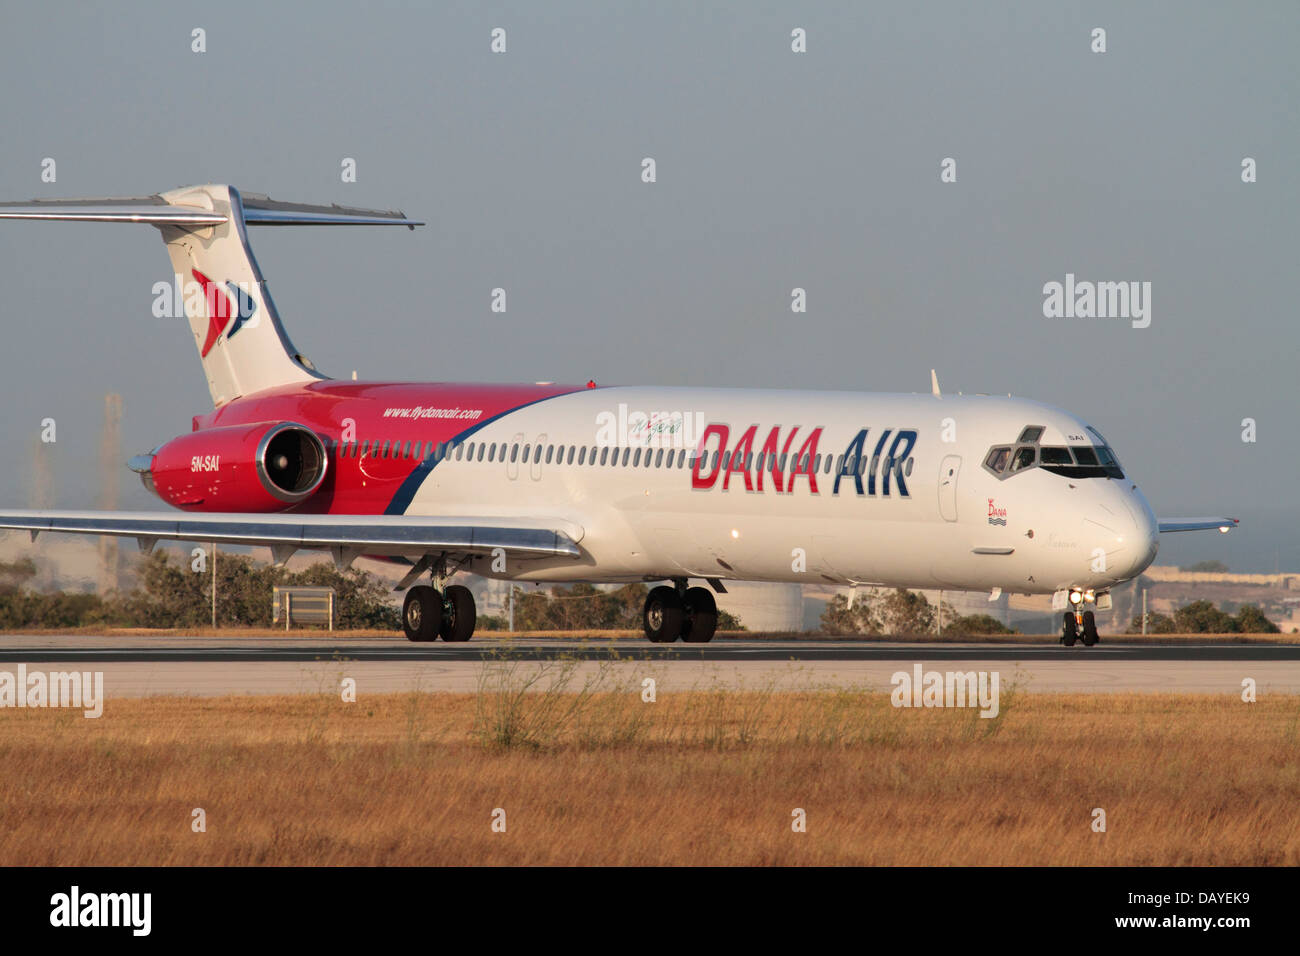 McDonnell Douglas MD-83 exploité par Air Dana du Nigéria d'entrer sur la piste pour le décollage à partir de Malte Banque D'Images